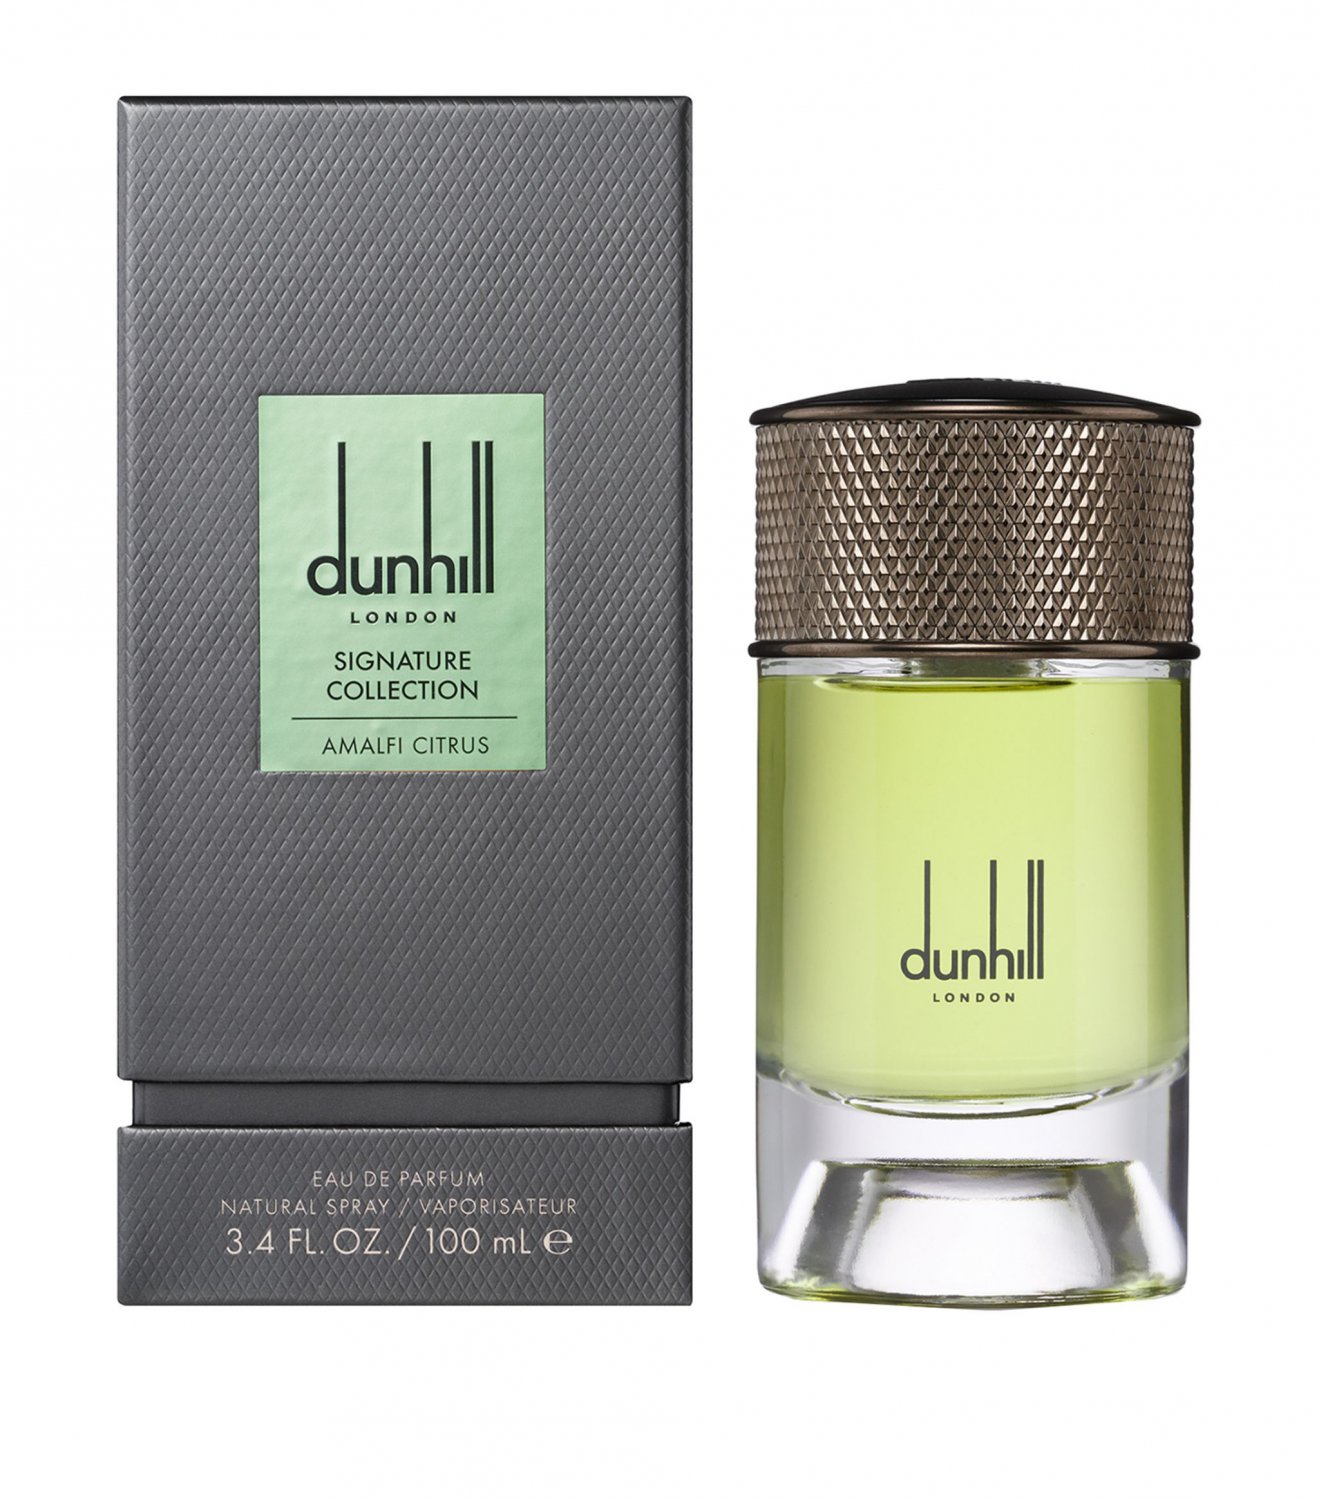 Dunhill Signature Collection Amalfi Citrus Cologne Eau de Parfum 3.4 oz Spray.